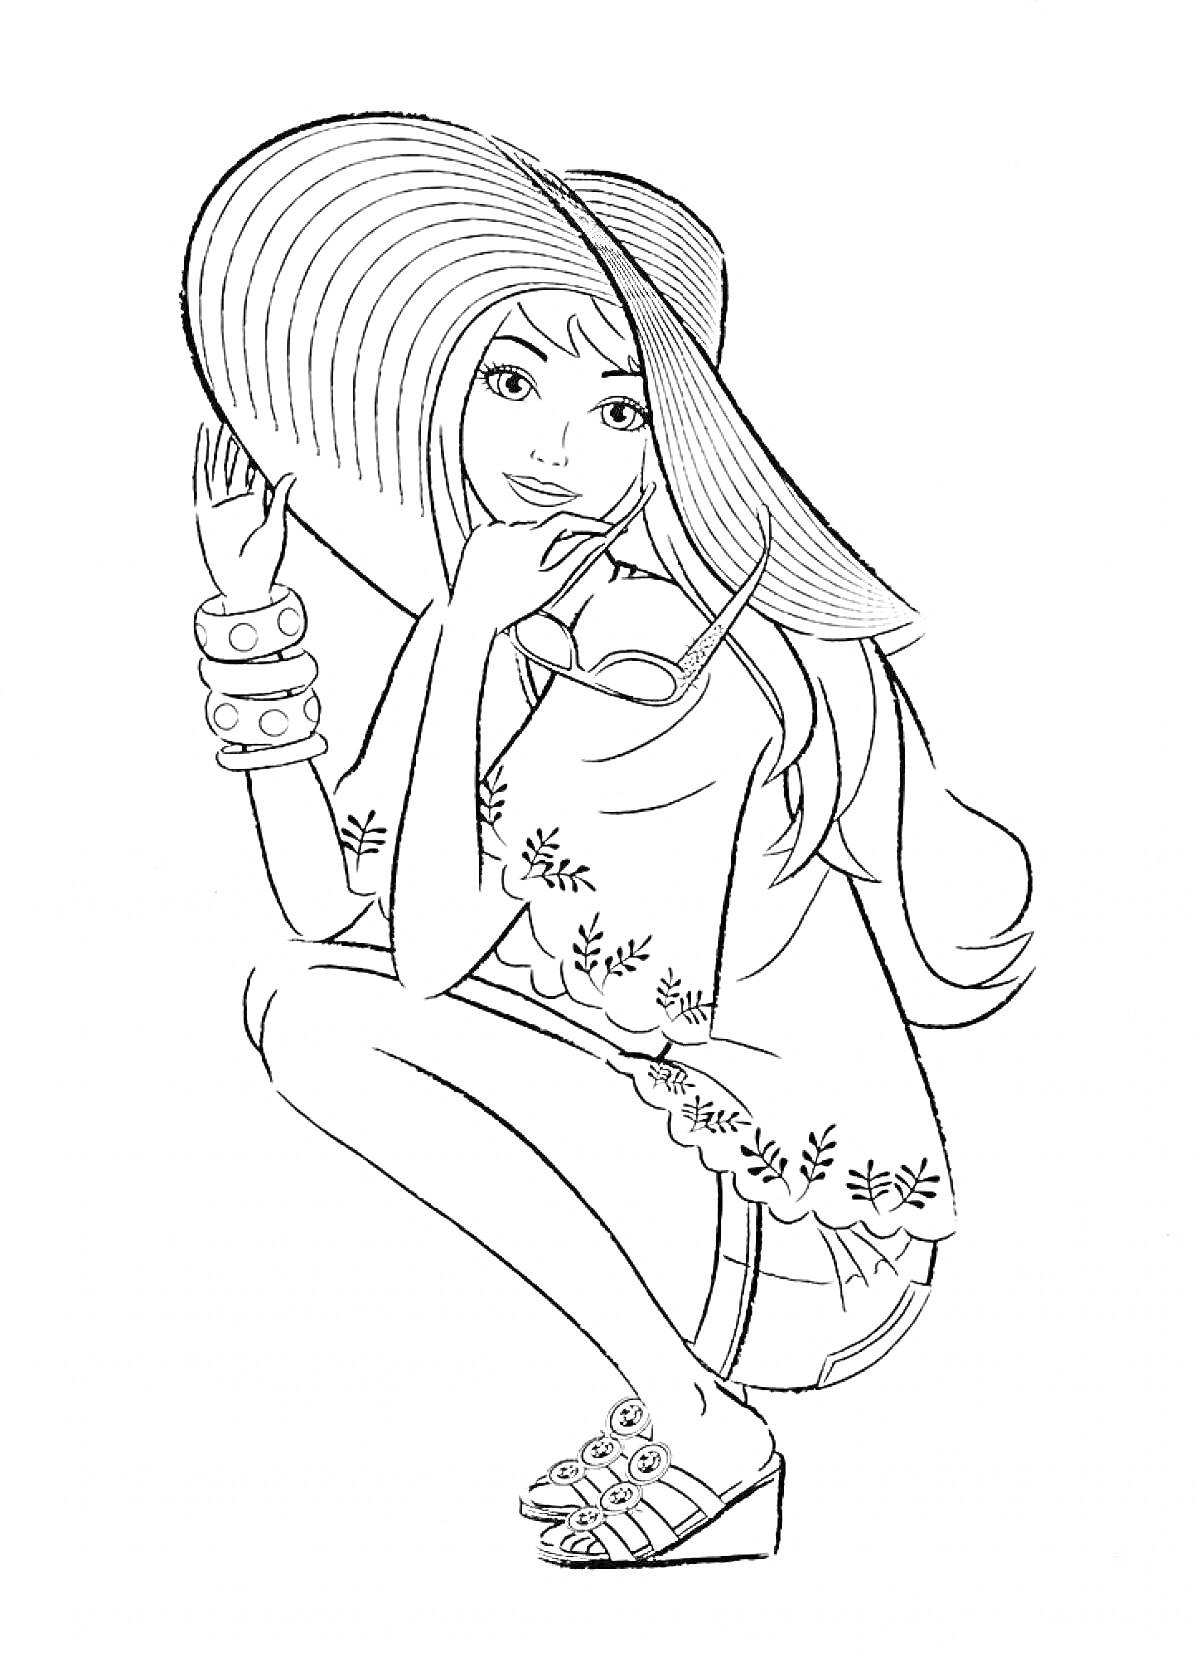 Раскраска Девушка в шляпе с солнцезащитными очками, накрашенная, в платье с цветочными узорами, босоножки с ремешками, браслеты на руке